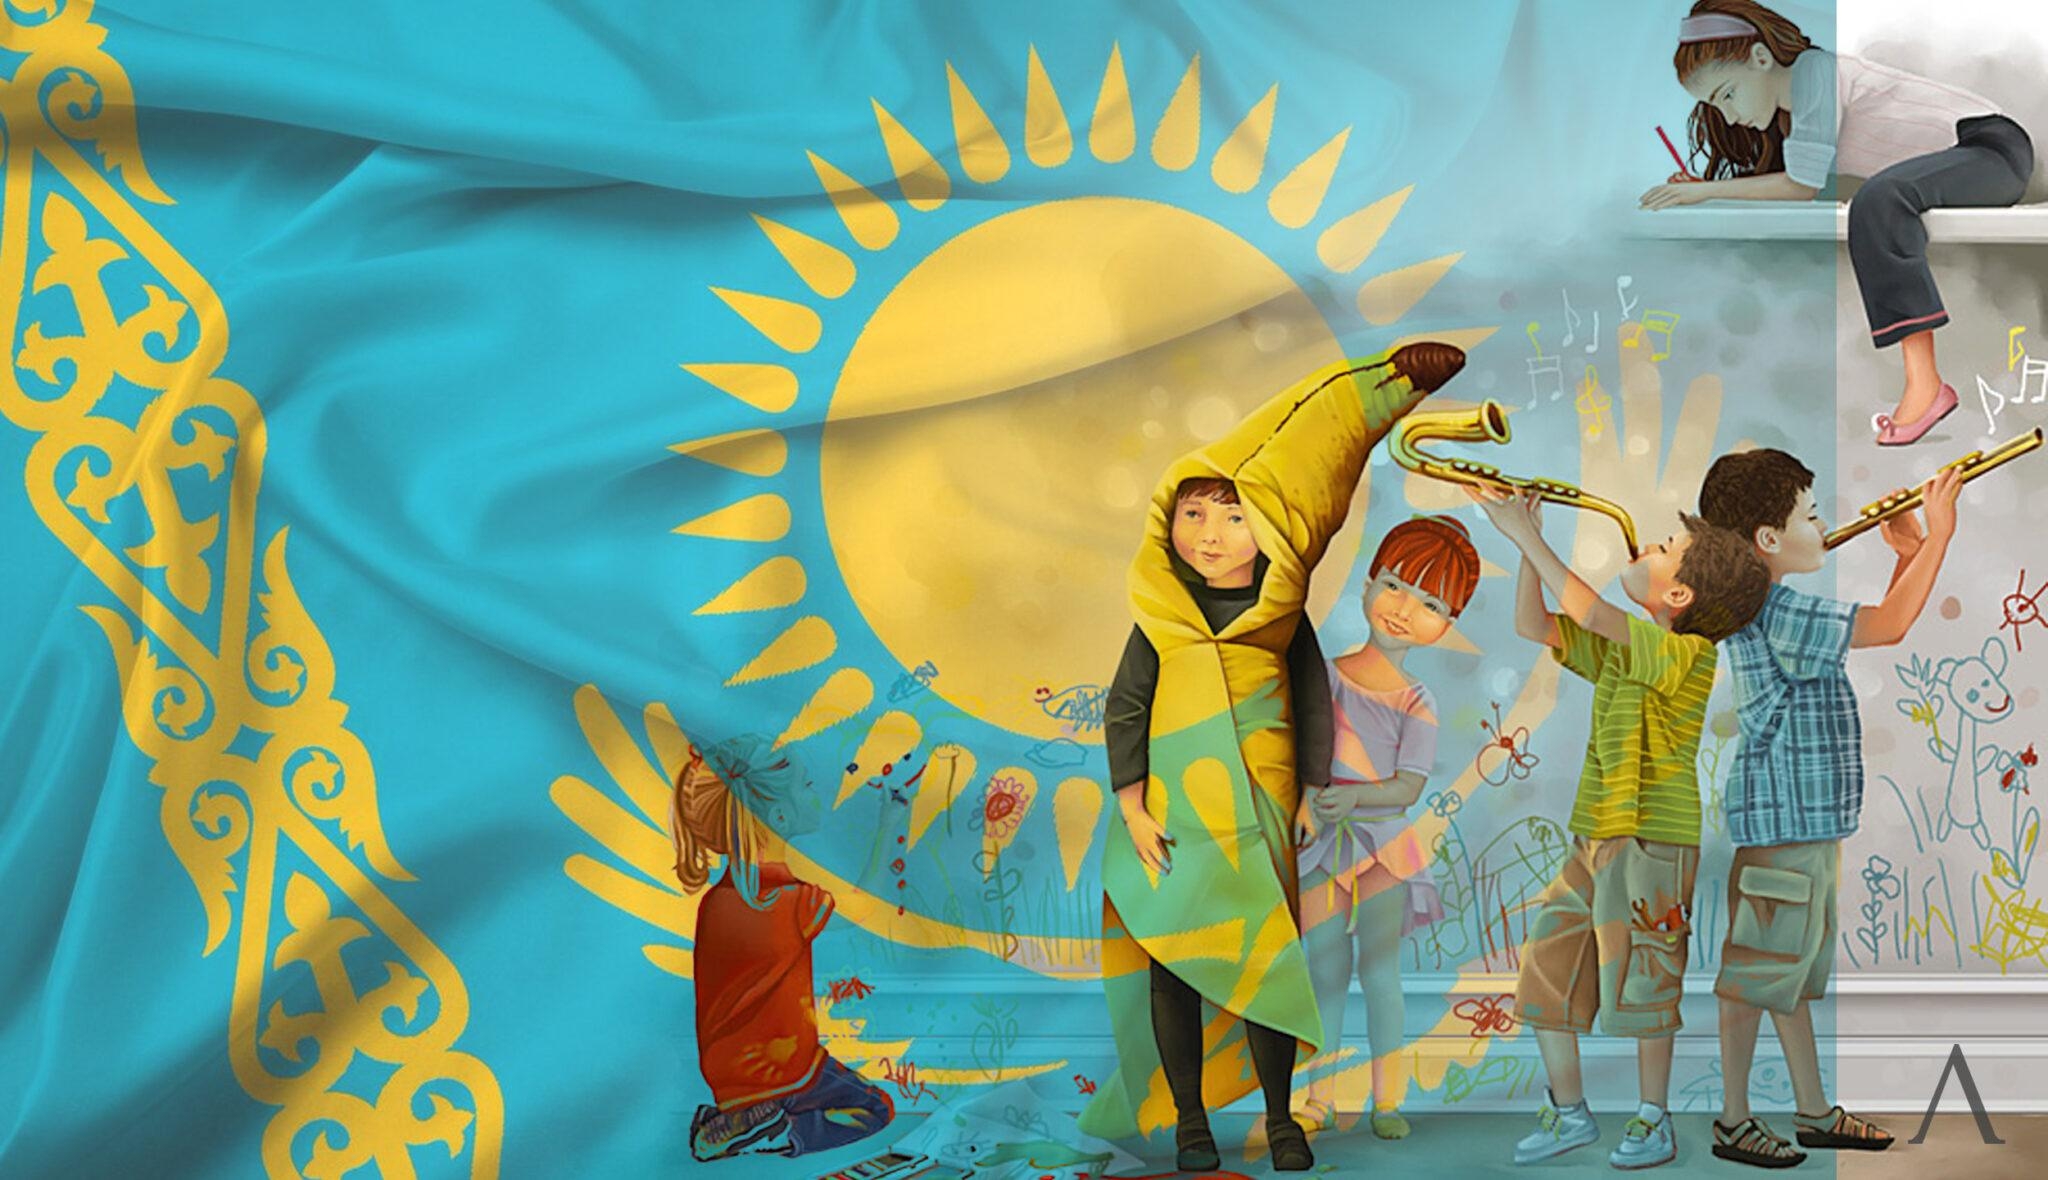 Дети Казахстана